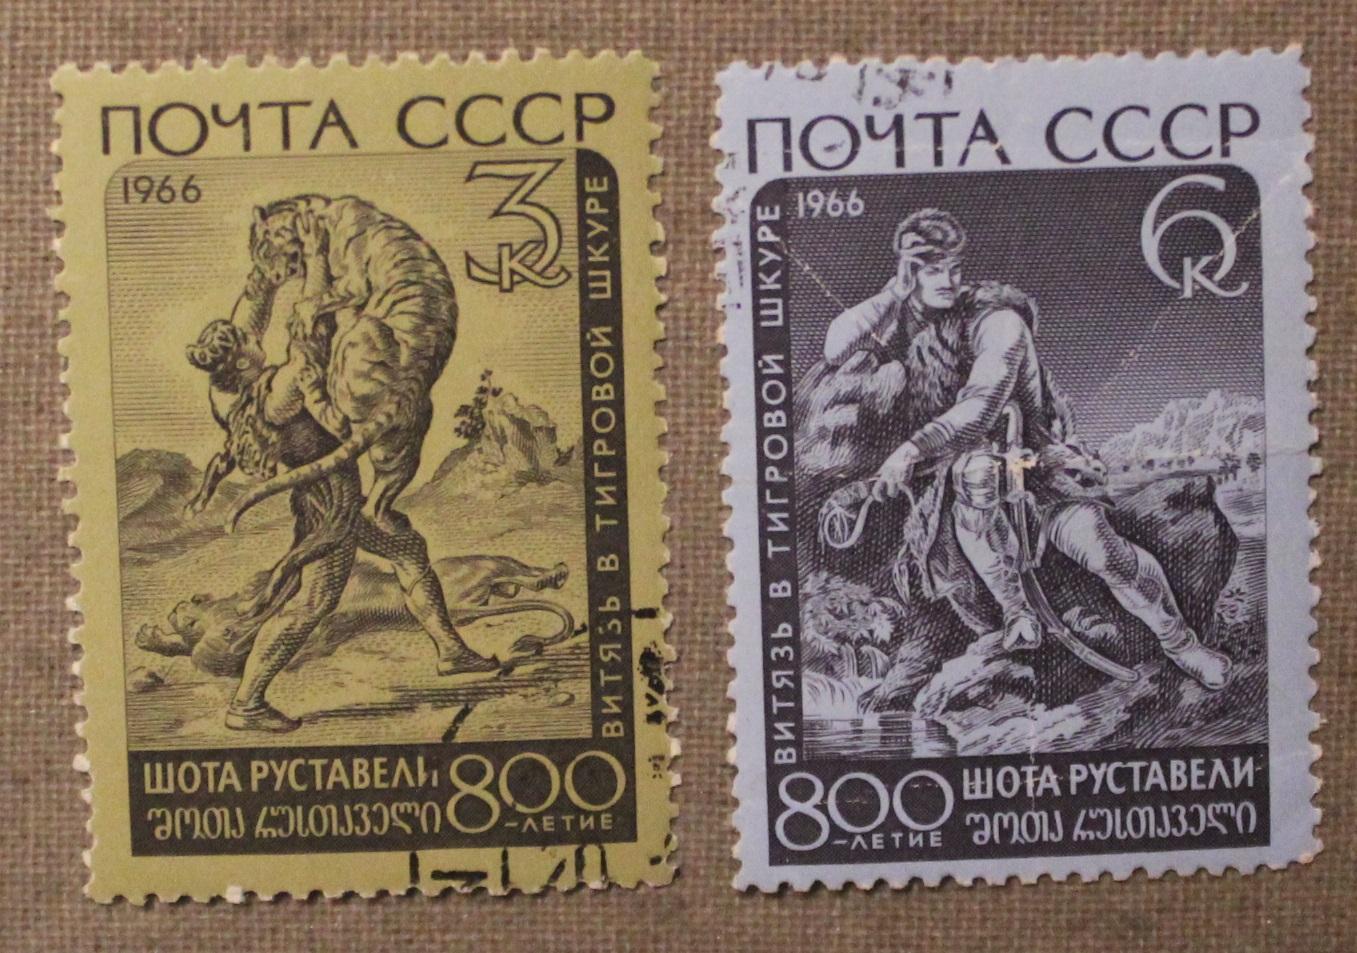 Две марки из набора, посвященного 800-летию Шота Руставели. Почта СССР 1966